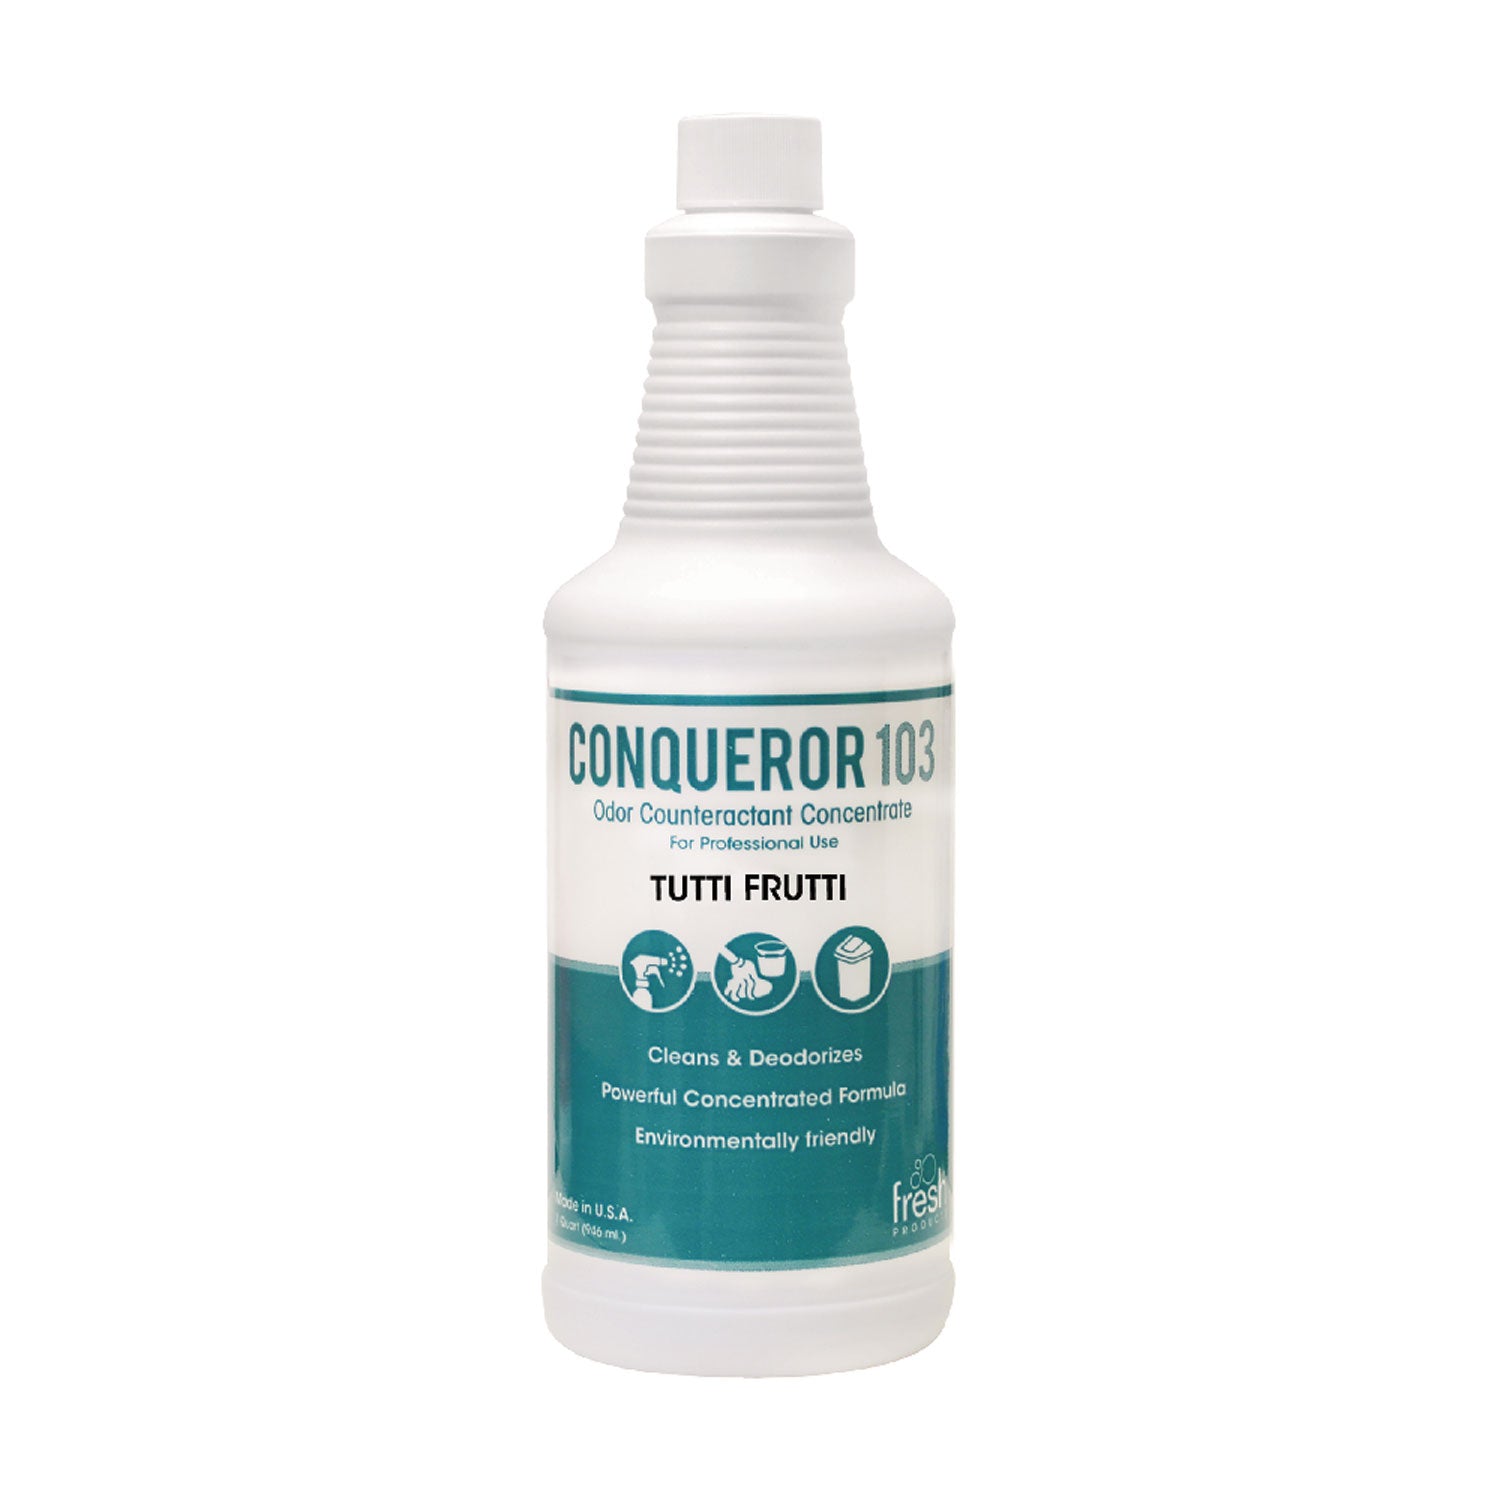 Conqueror 103 Odor Counteractant Concentrate, Tutti-Frutti, 32 oz Bottle, 12/Carton - 1